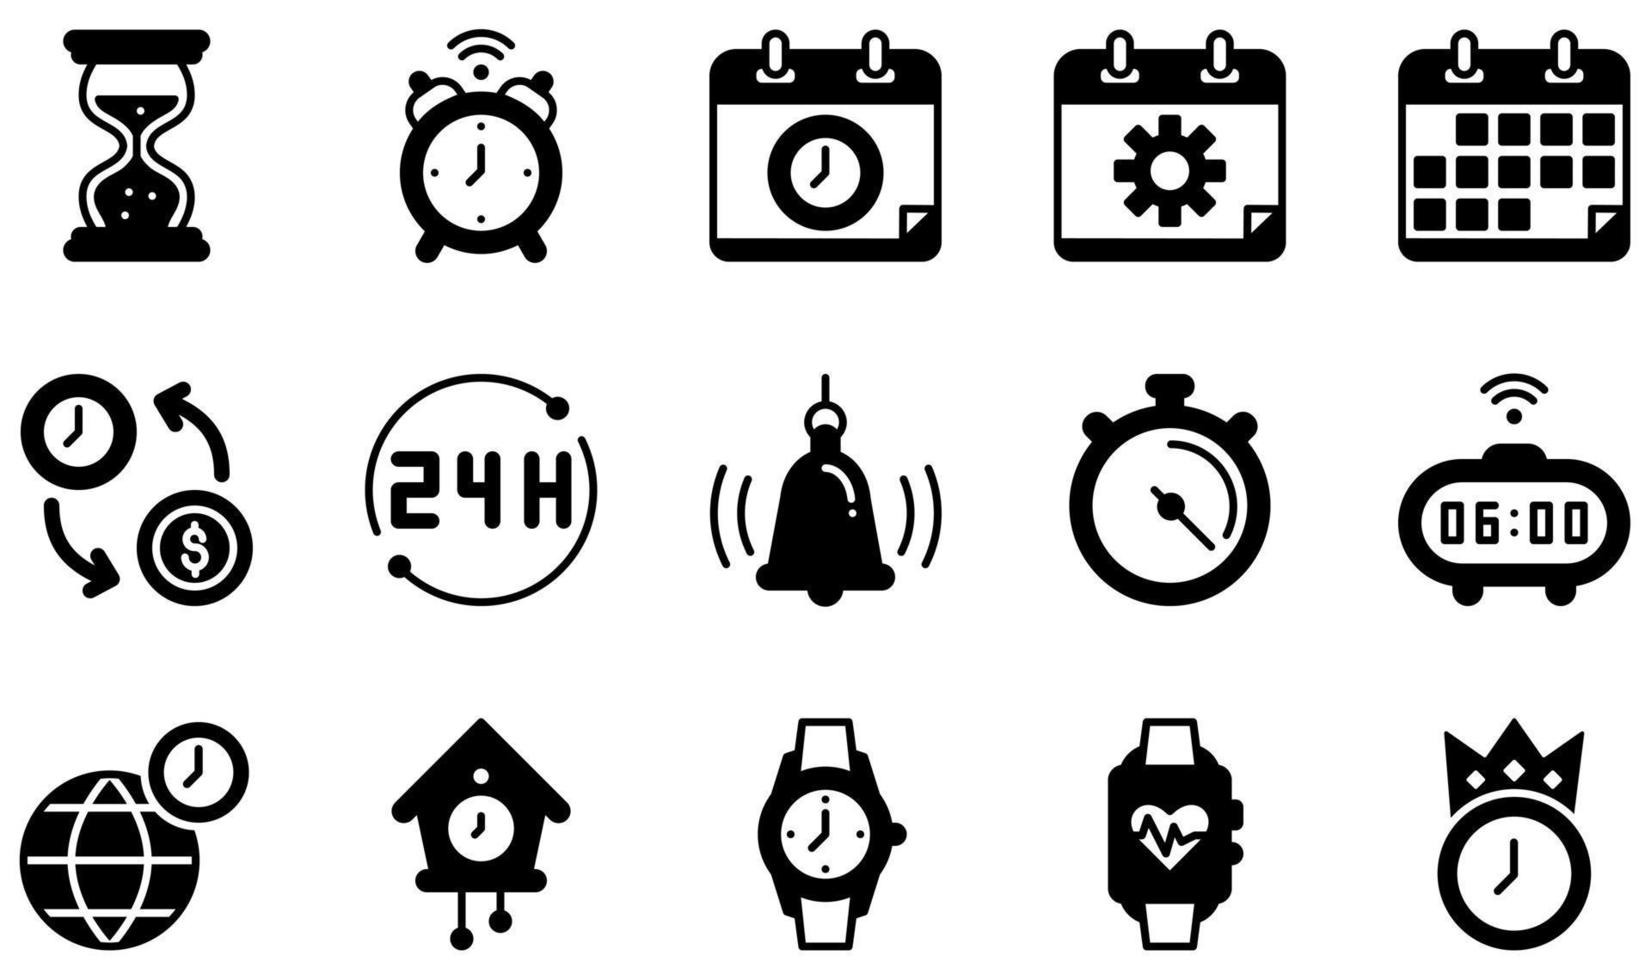 set di icone vettoriali relative al tempo. contiene icone come clessidra, sveglia, gestione del tempo, calendario, tempo è denaro, cronometro e altro ancora.